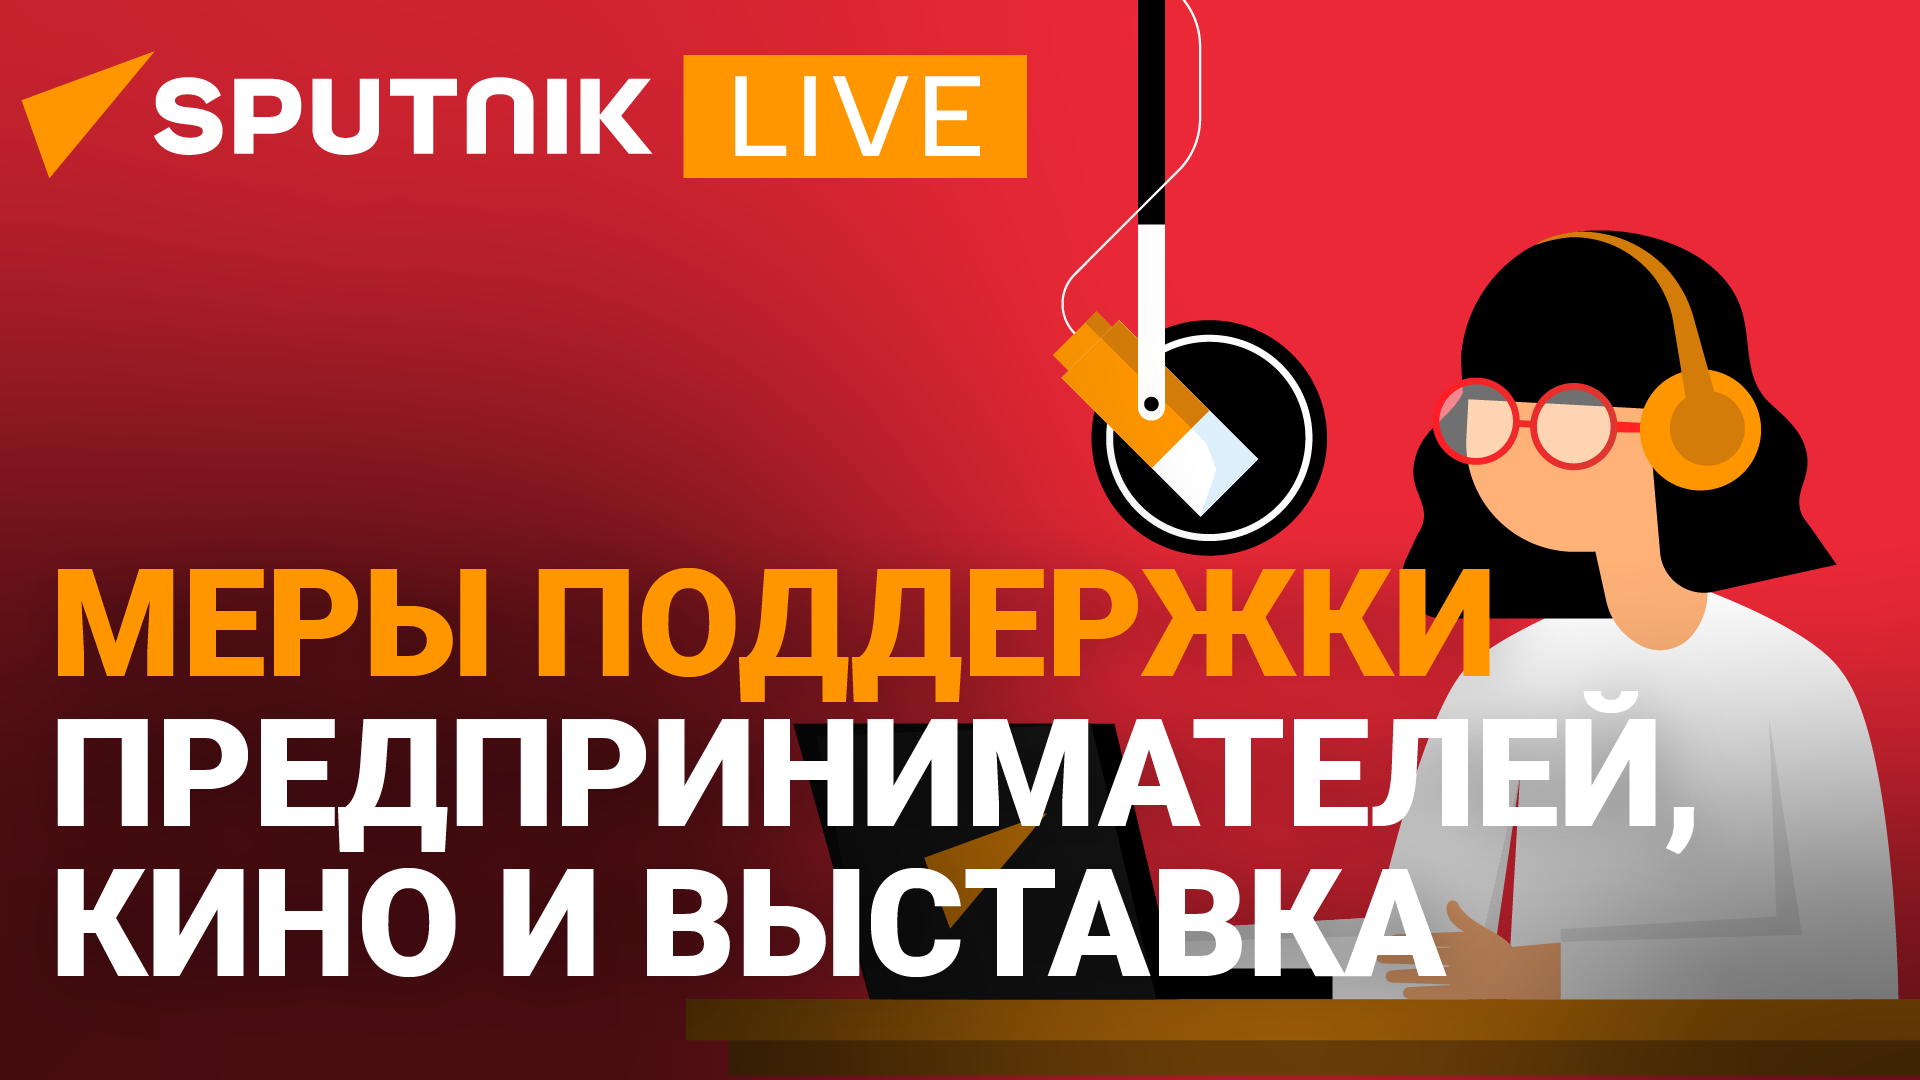 Дневной эфир радио Sputnik Абхазия